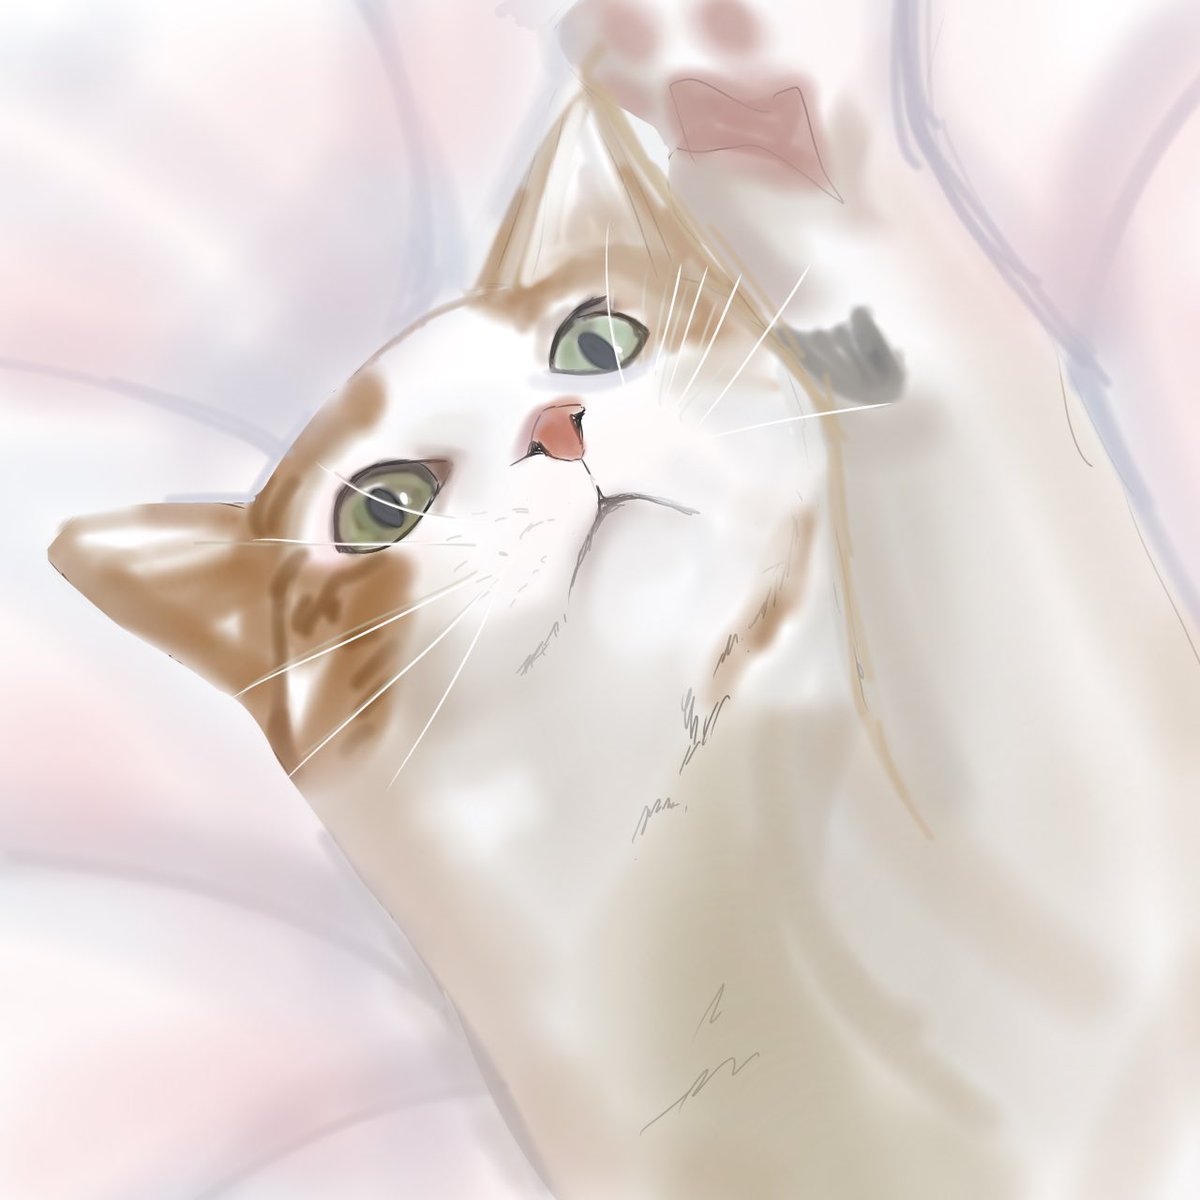 「絵の練習で描いた猫の模写 」|フェイトのイラスト